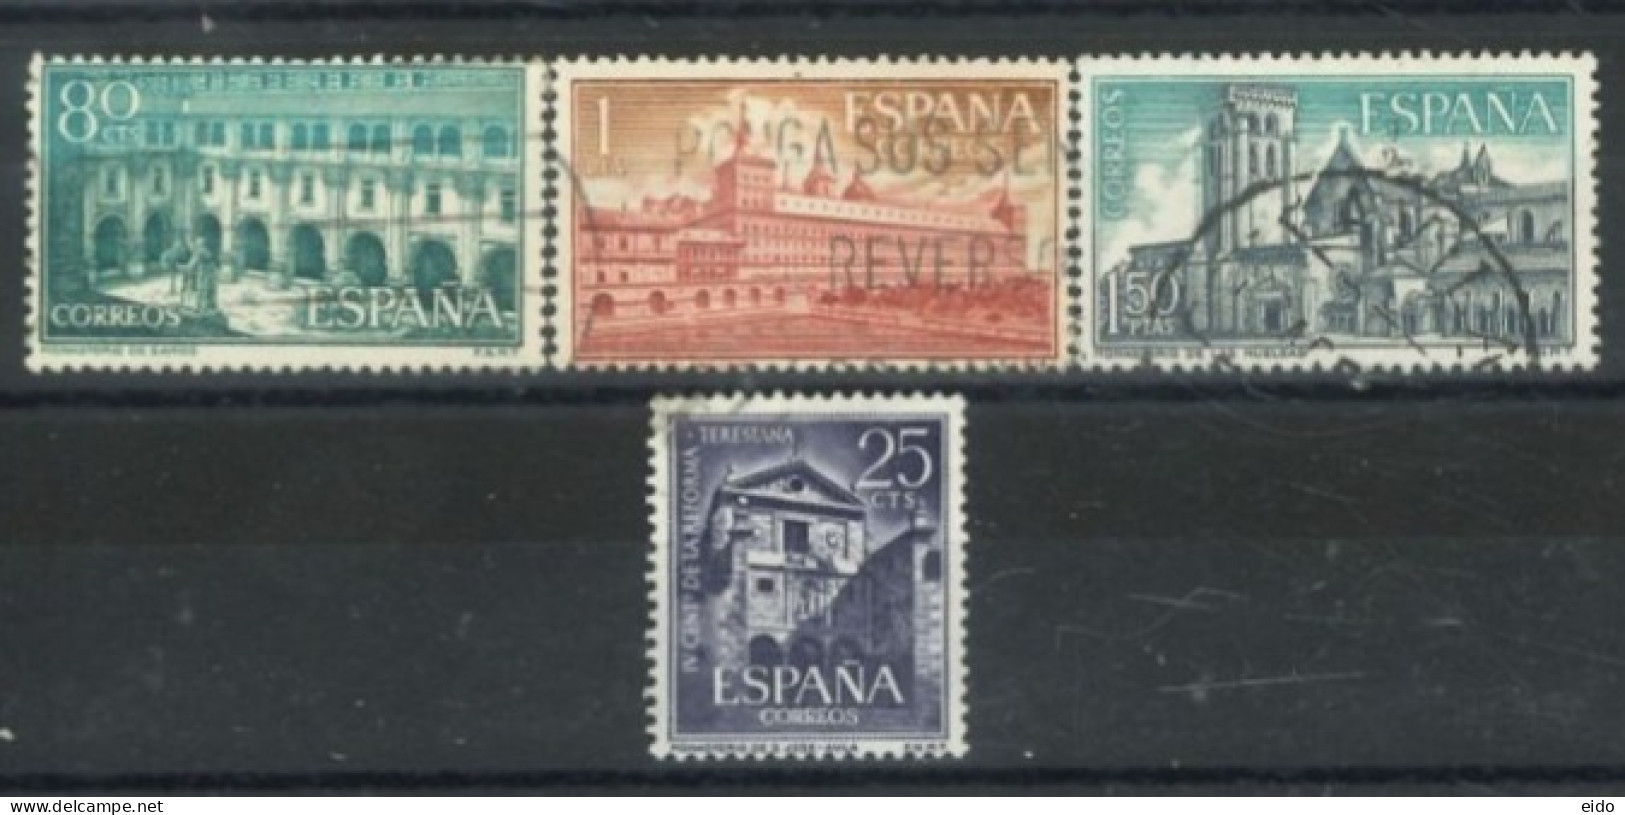 SPAIN, 1960/61, MONASTERIES & SAN JOSE CONVENT STAMPS SET OF 4, USED. - Gebruikt